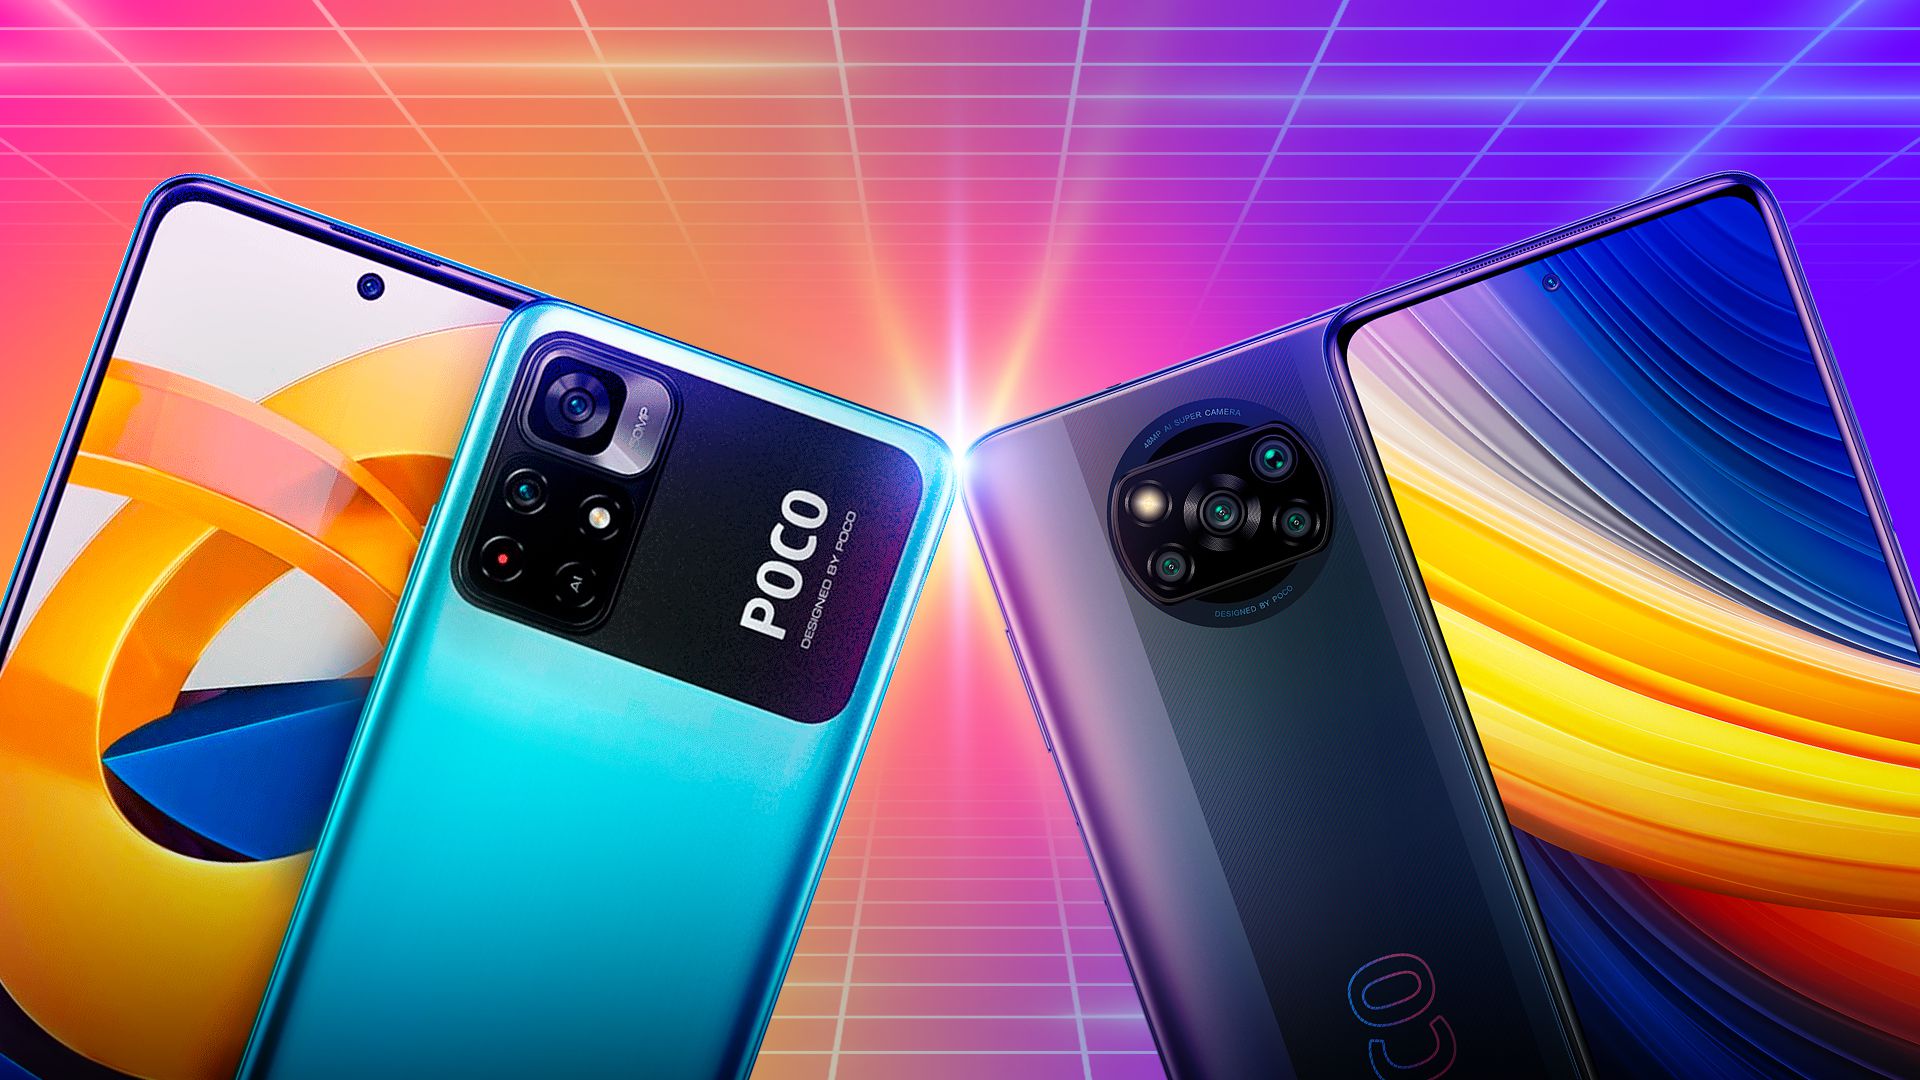 Poco F3 vs Poco X3 NFC: semelhanças e diferenças entre celulares Xiaomi